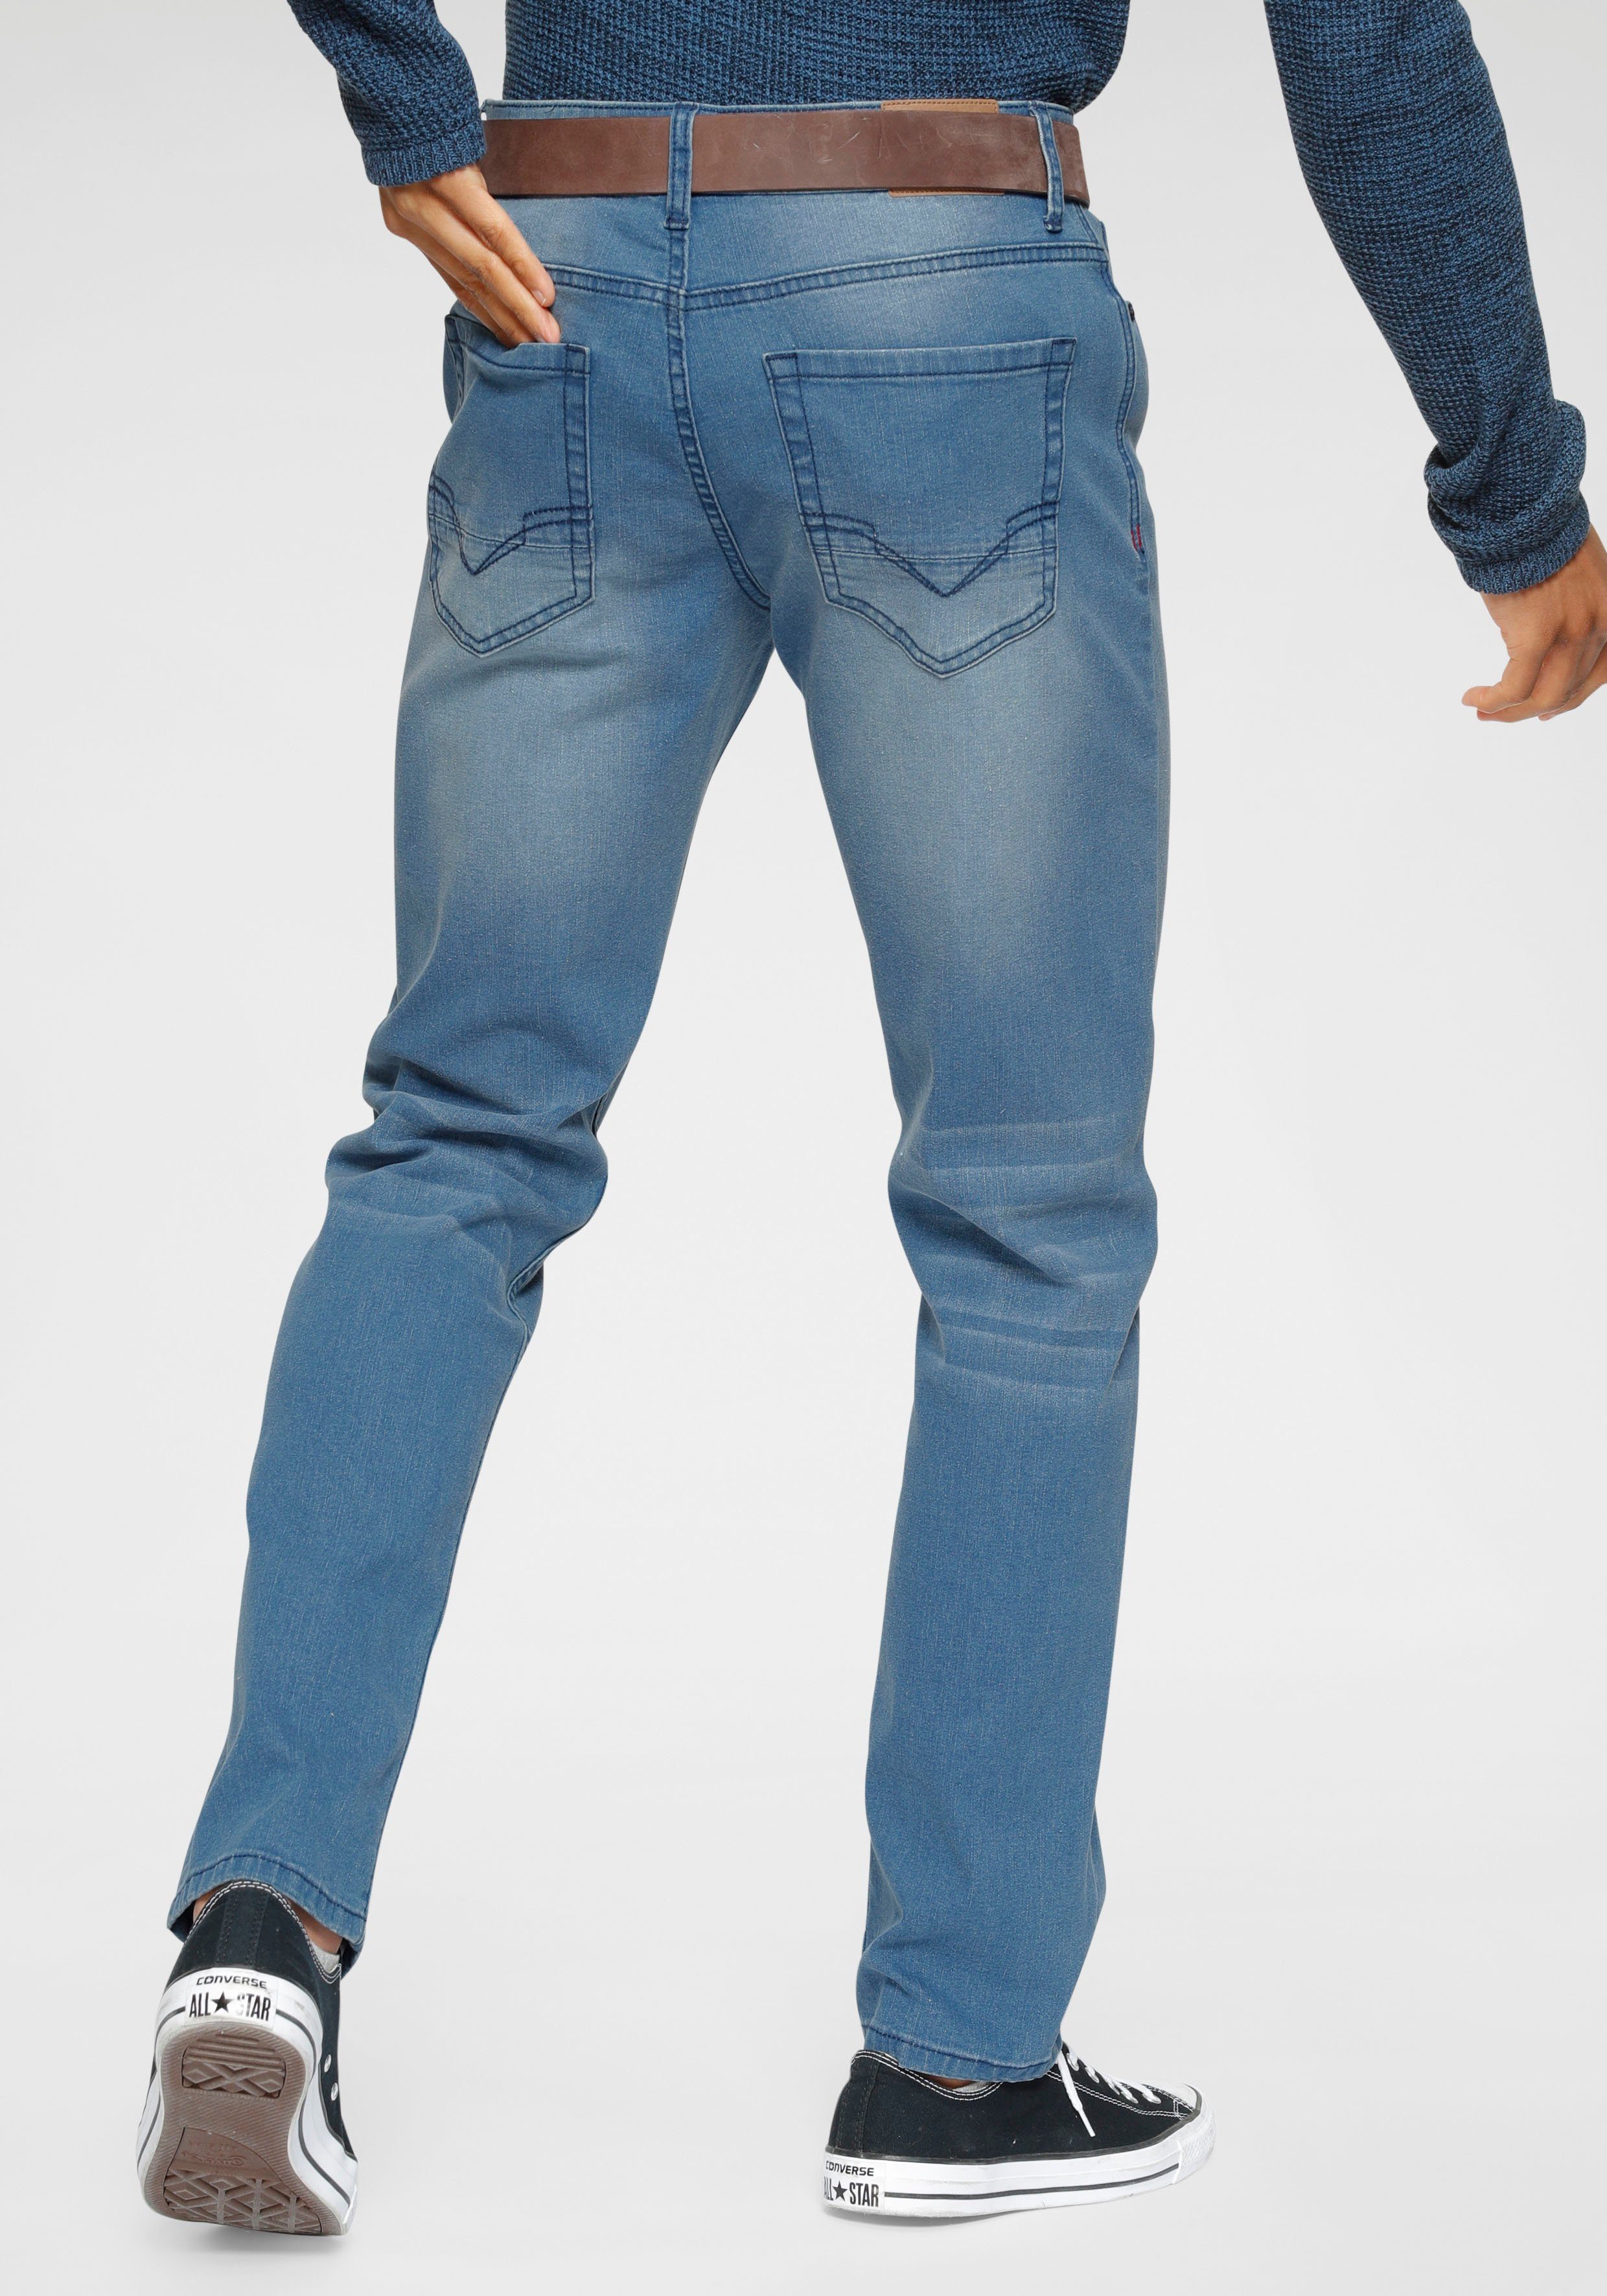 H.I.S Slim-fit-Jeans FLUSH Ökologische, wassersparende Produktion durch  Ozon Wash